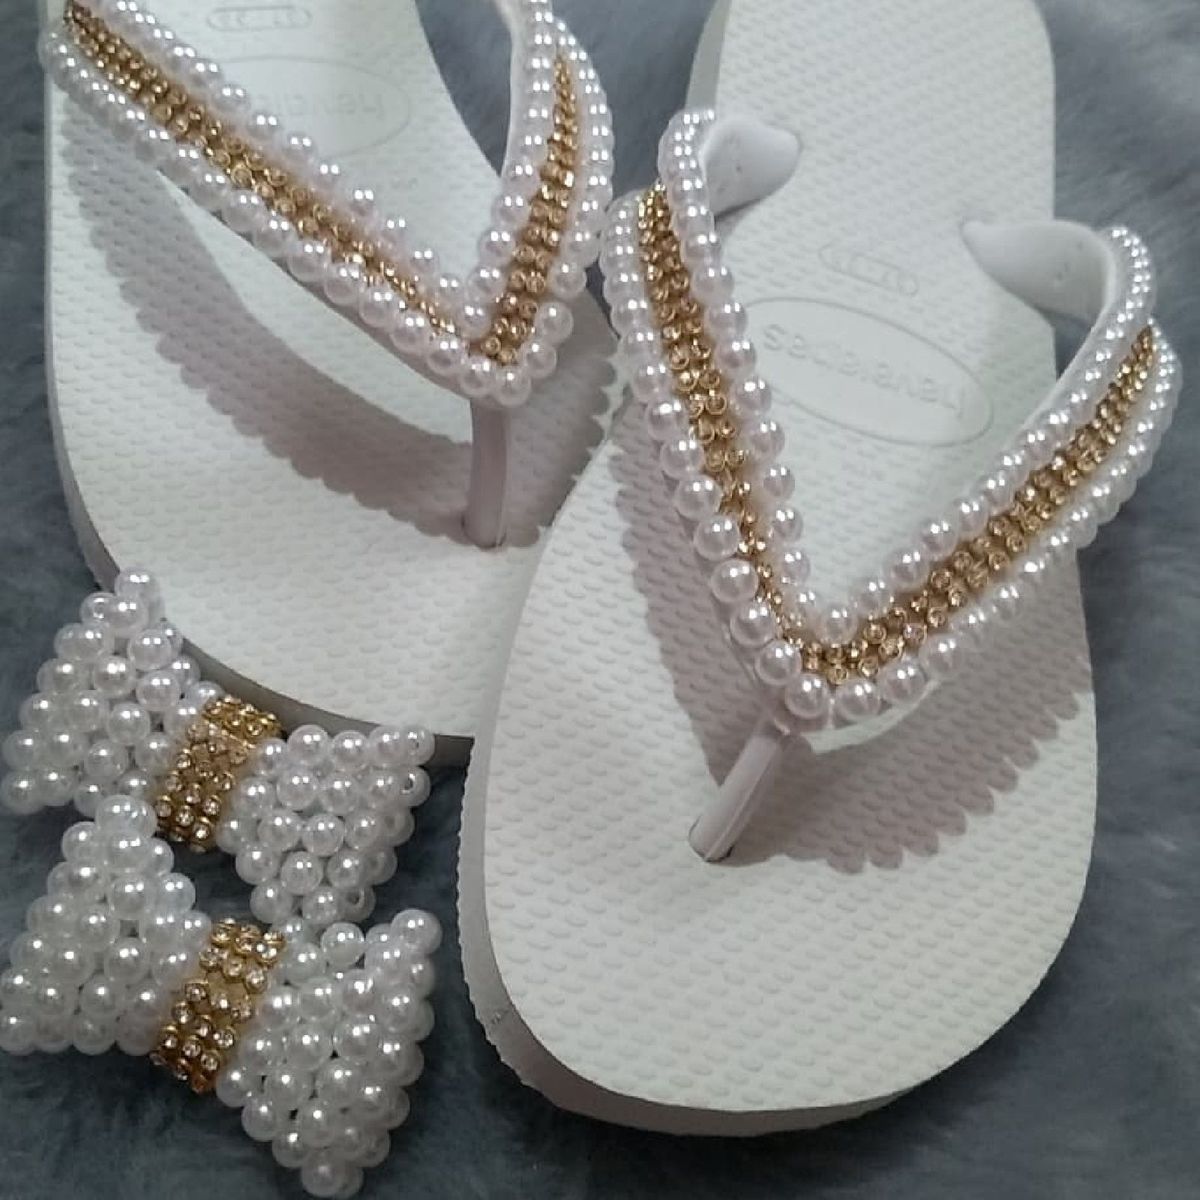 sandalias havaianas customizadas